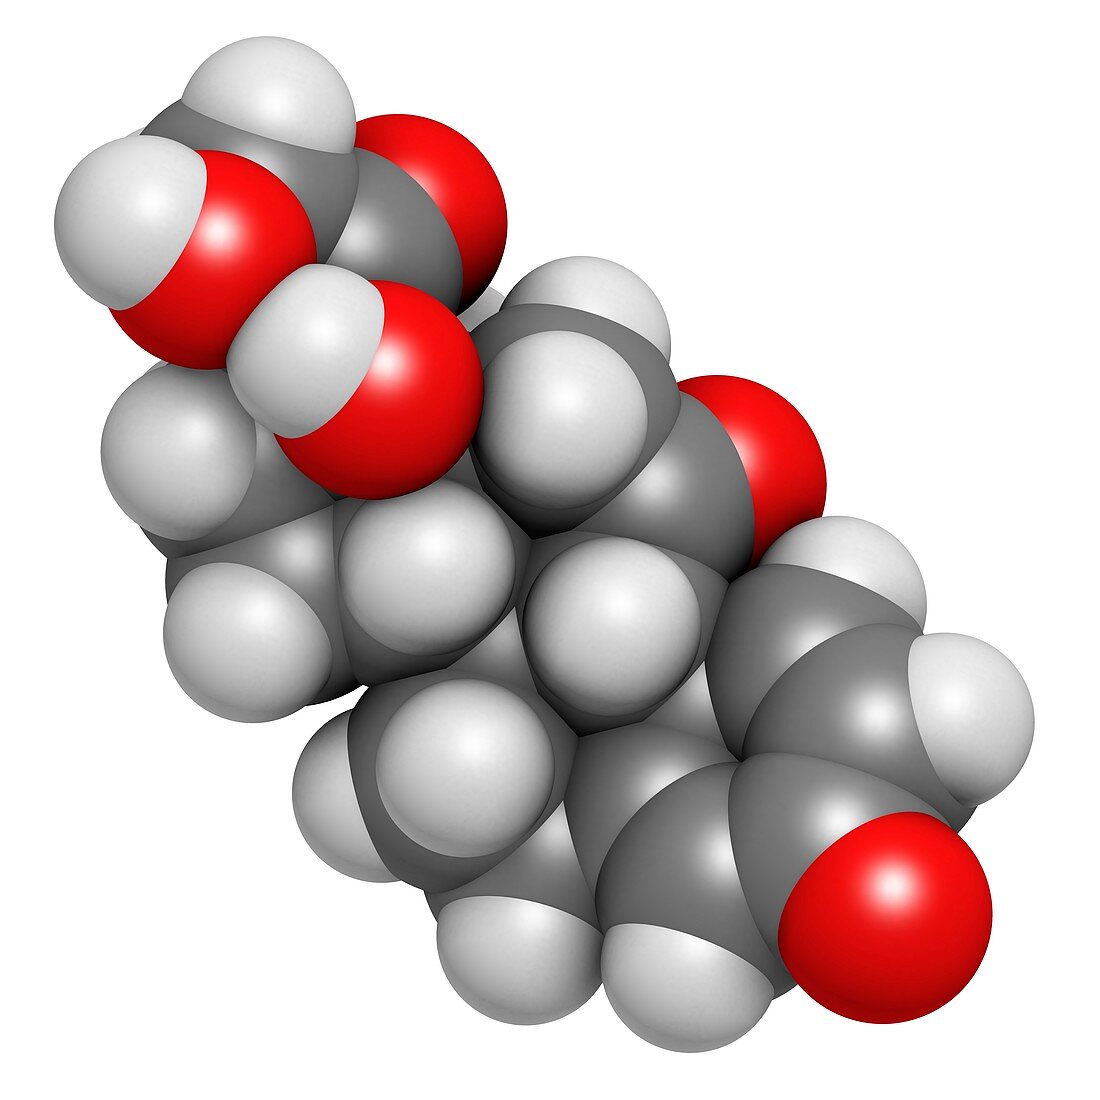 Prednisone corticosteroid drug molecule